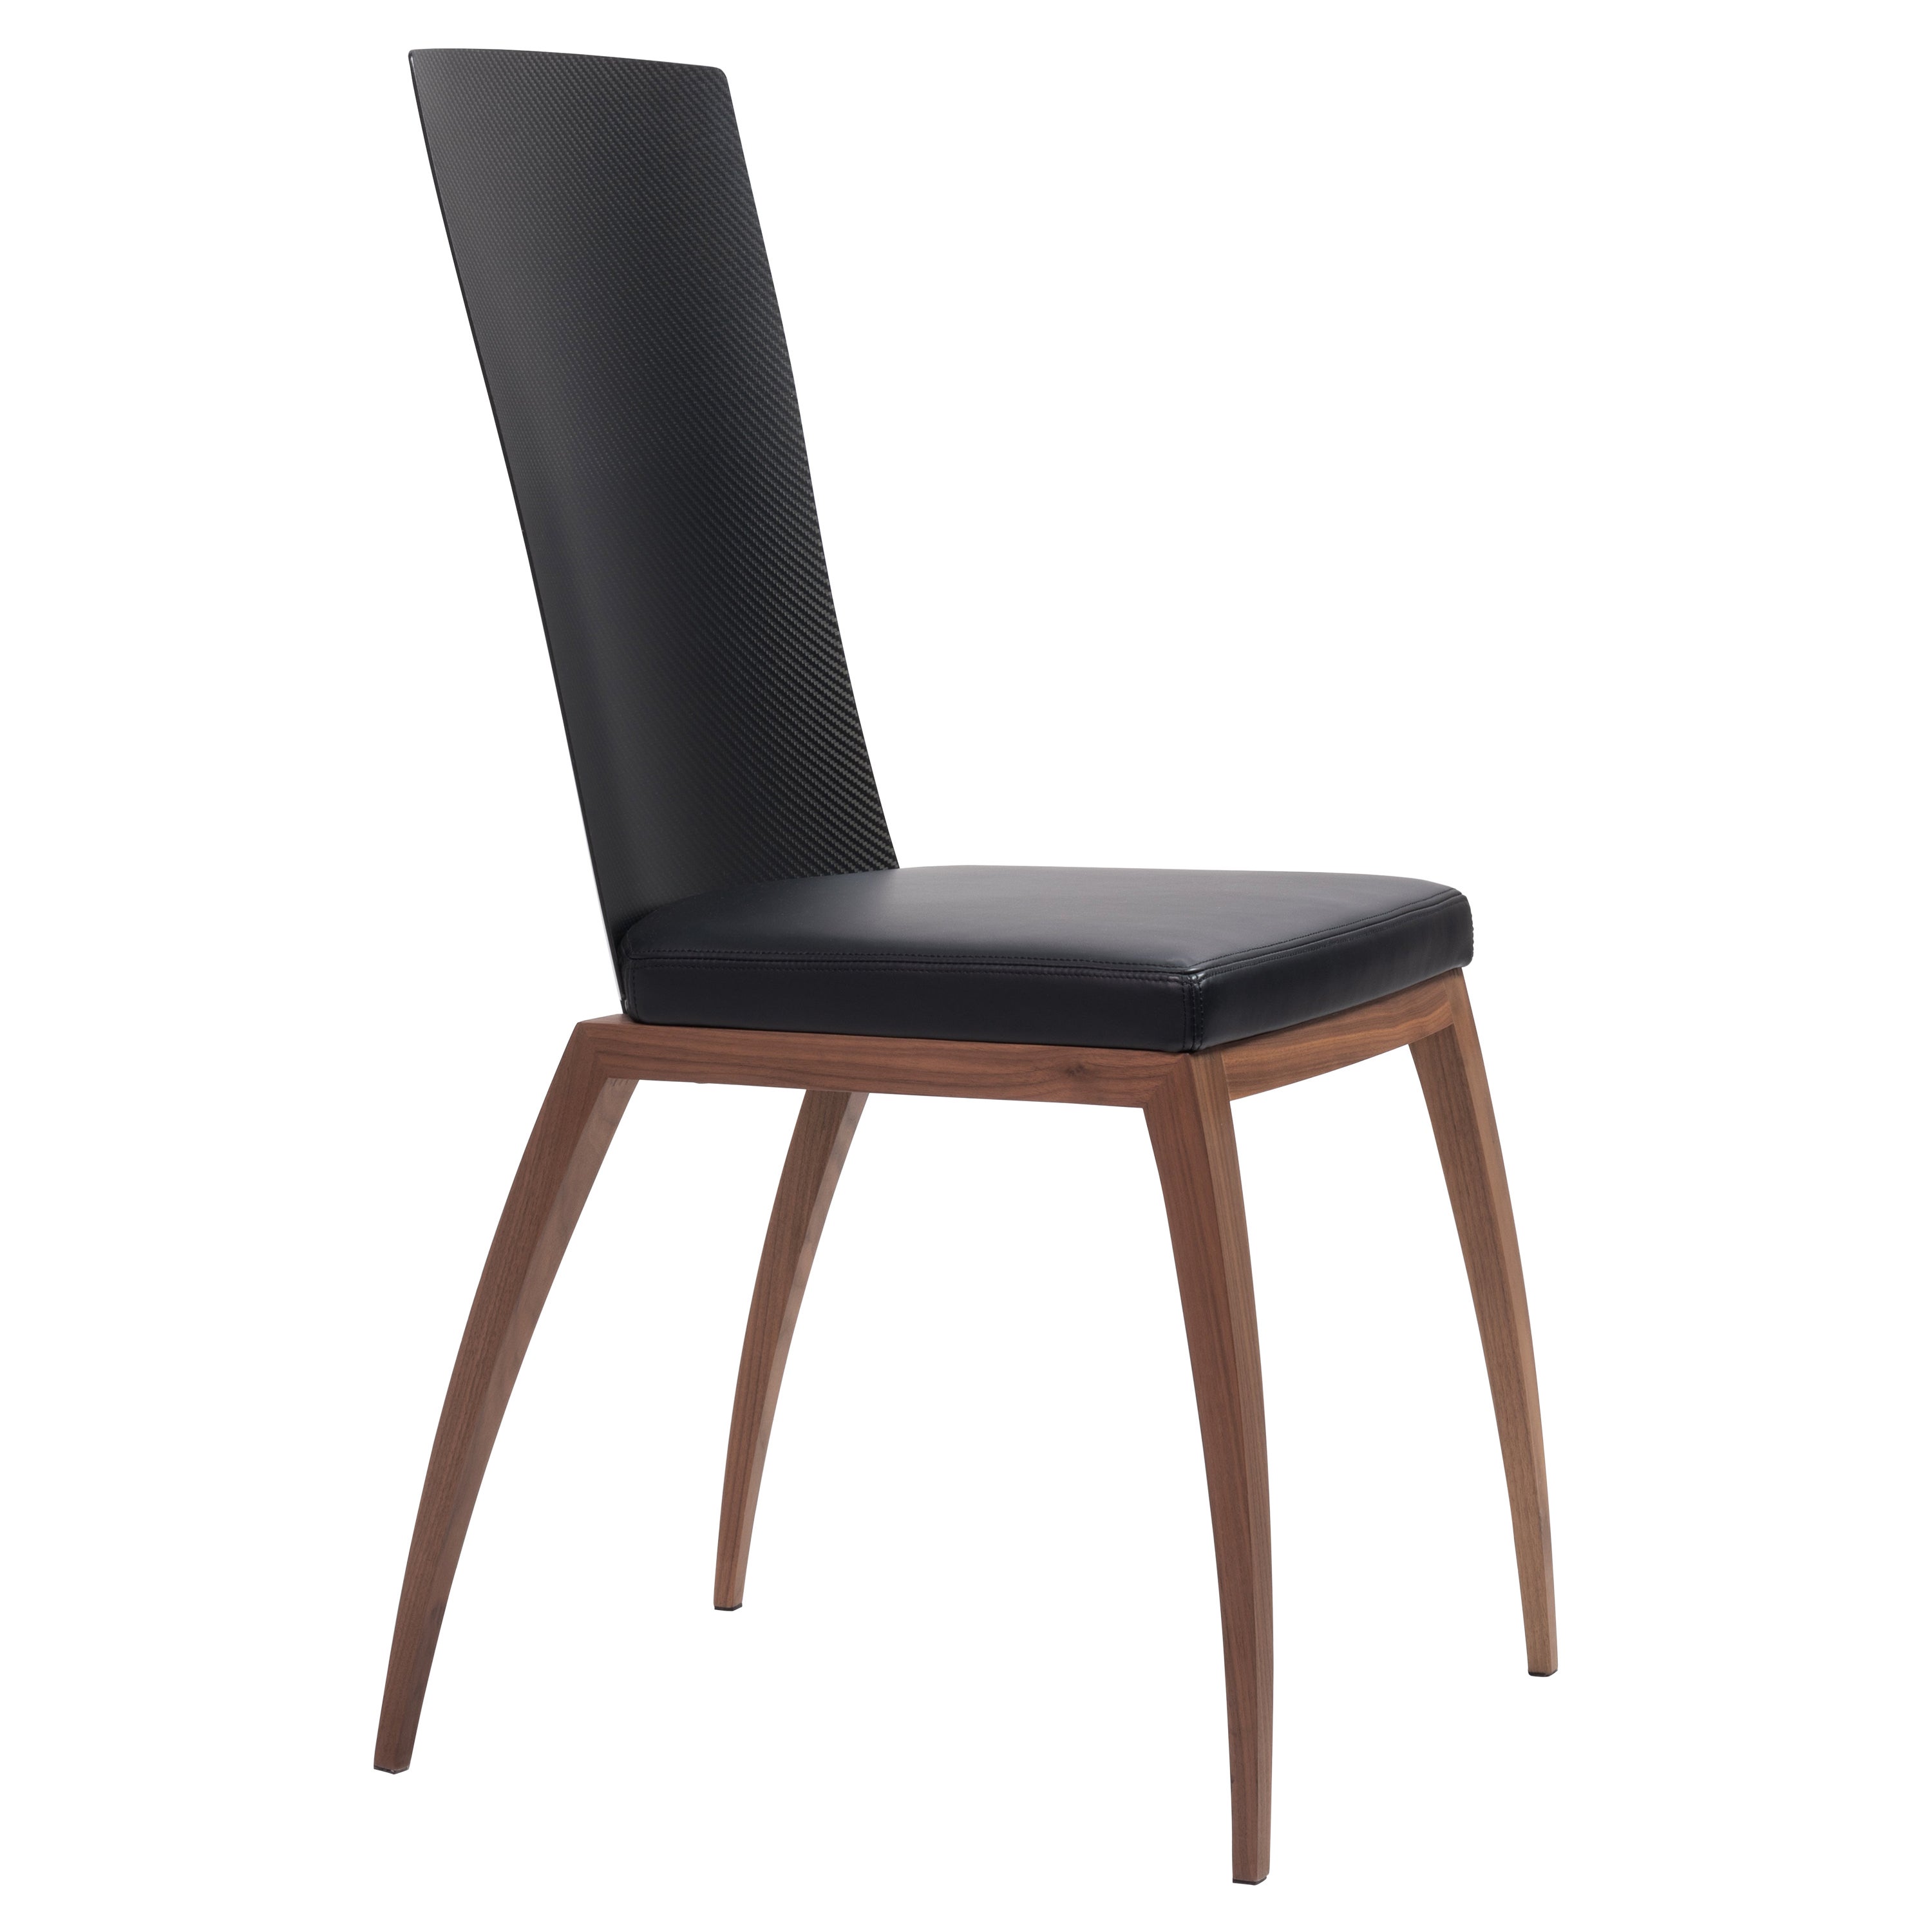 Chaise Fibra, chaise design en fibre de carbone et noyer Canaletto, fabriquée en Italie